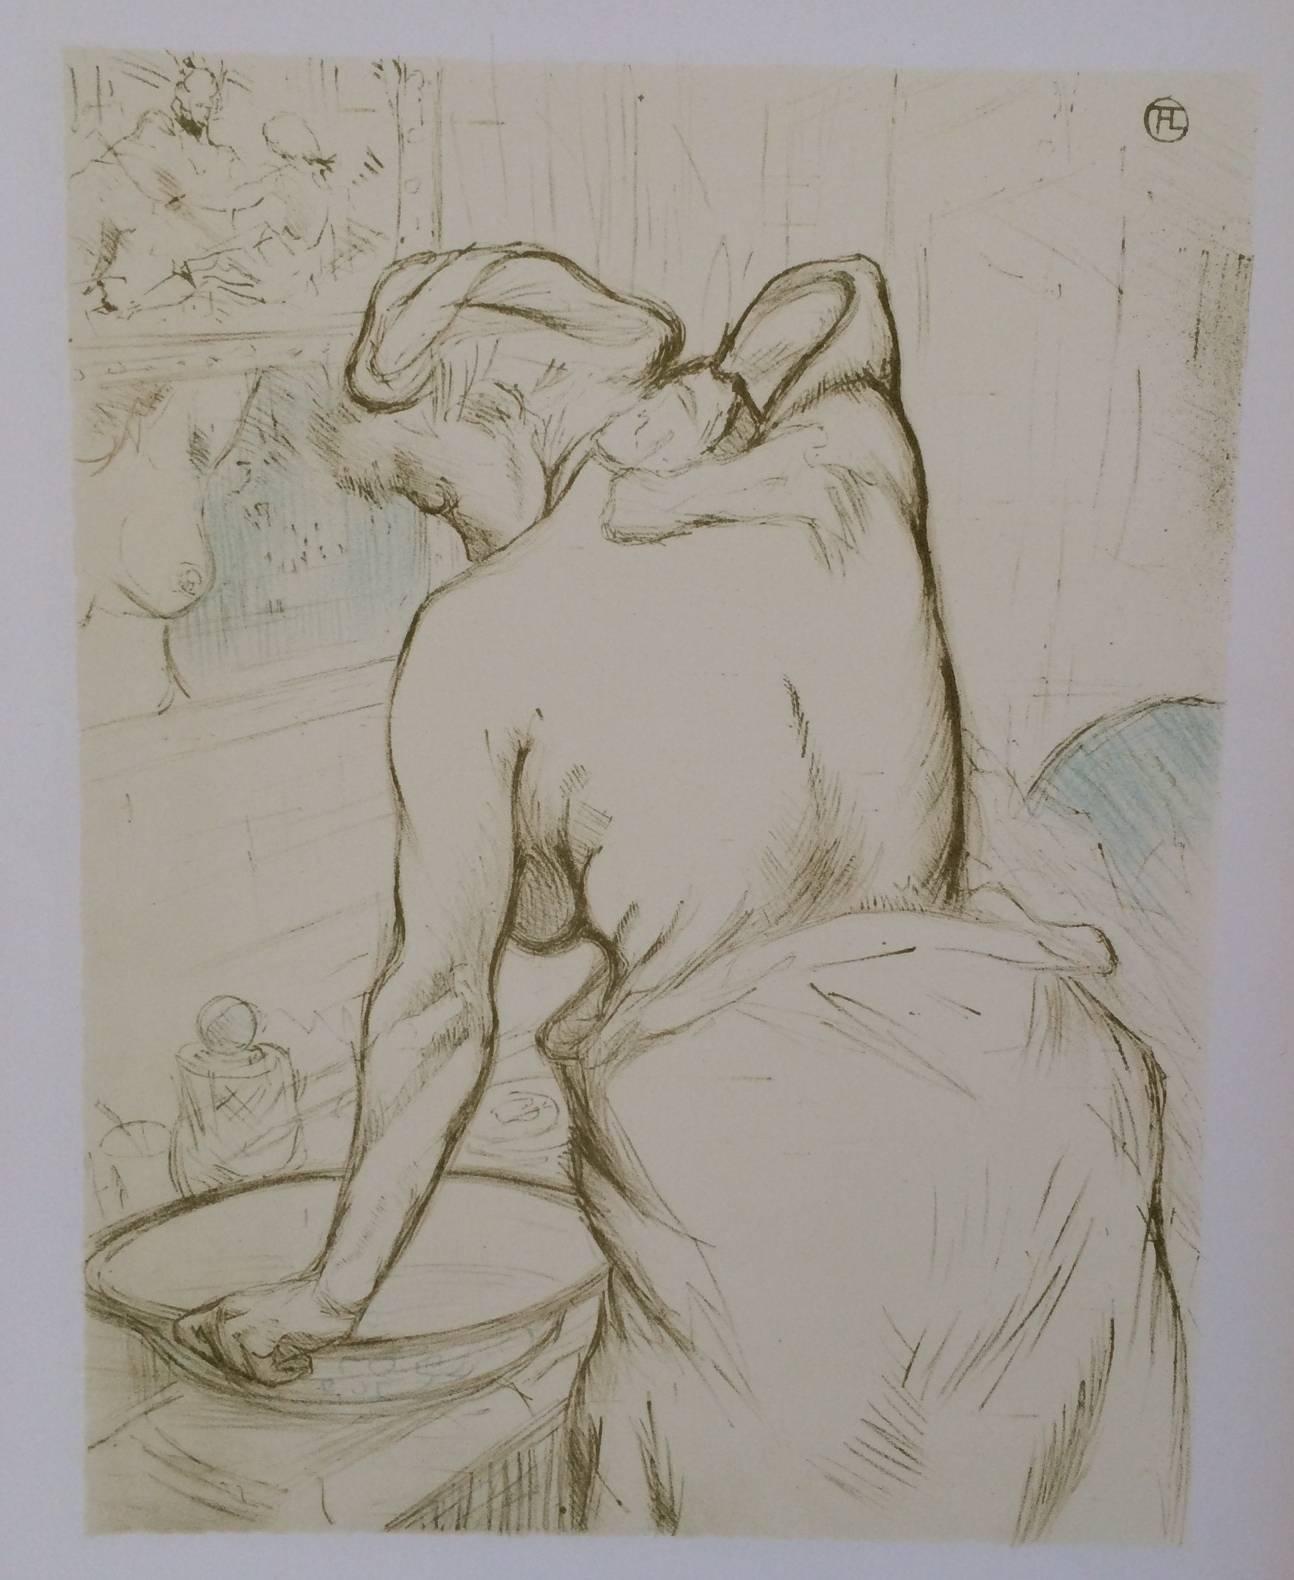 (After) Henri Toulouse Lautrec Figurative Print - "La Toilette" from "Elles" Color Lithograph by Henri Toulouse Lautrec